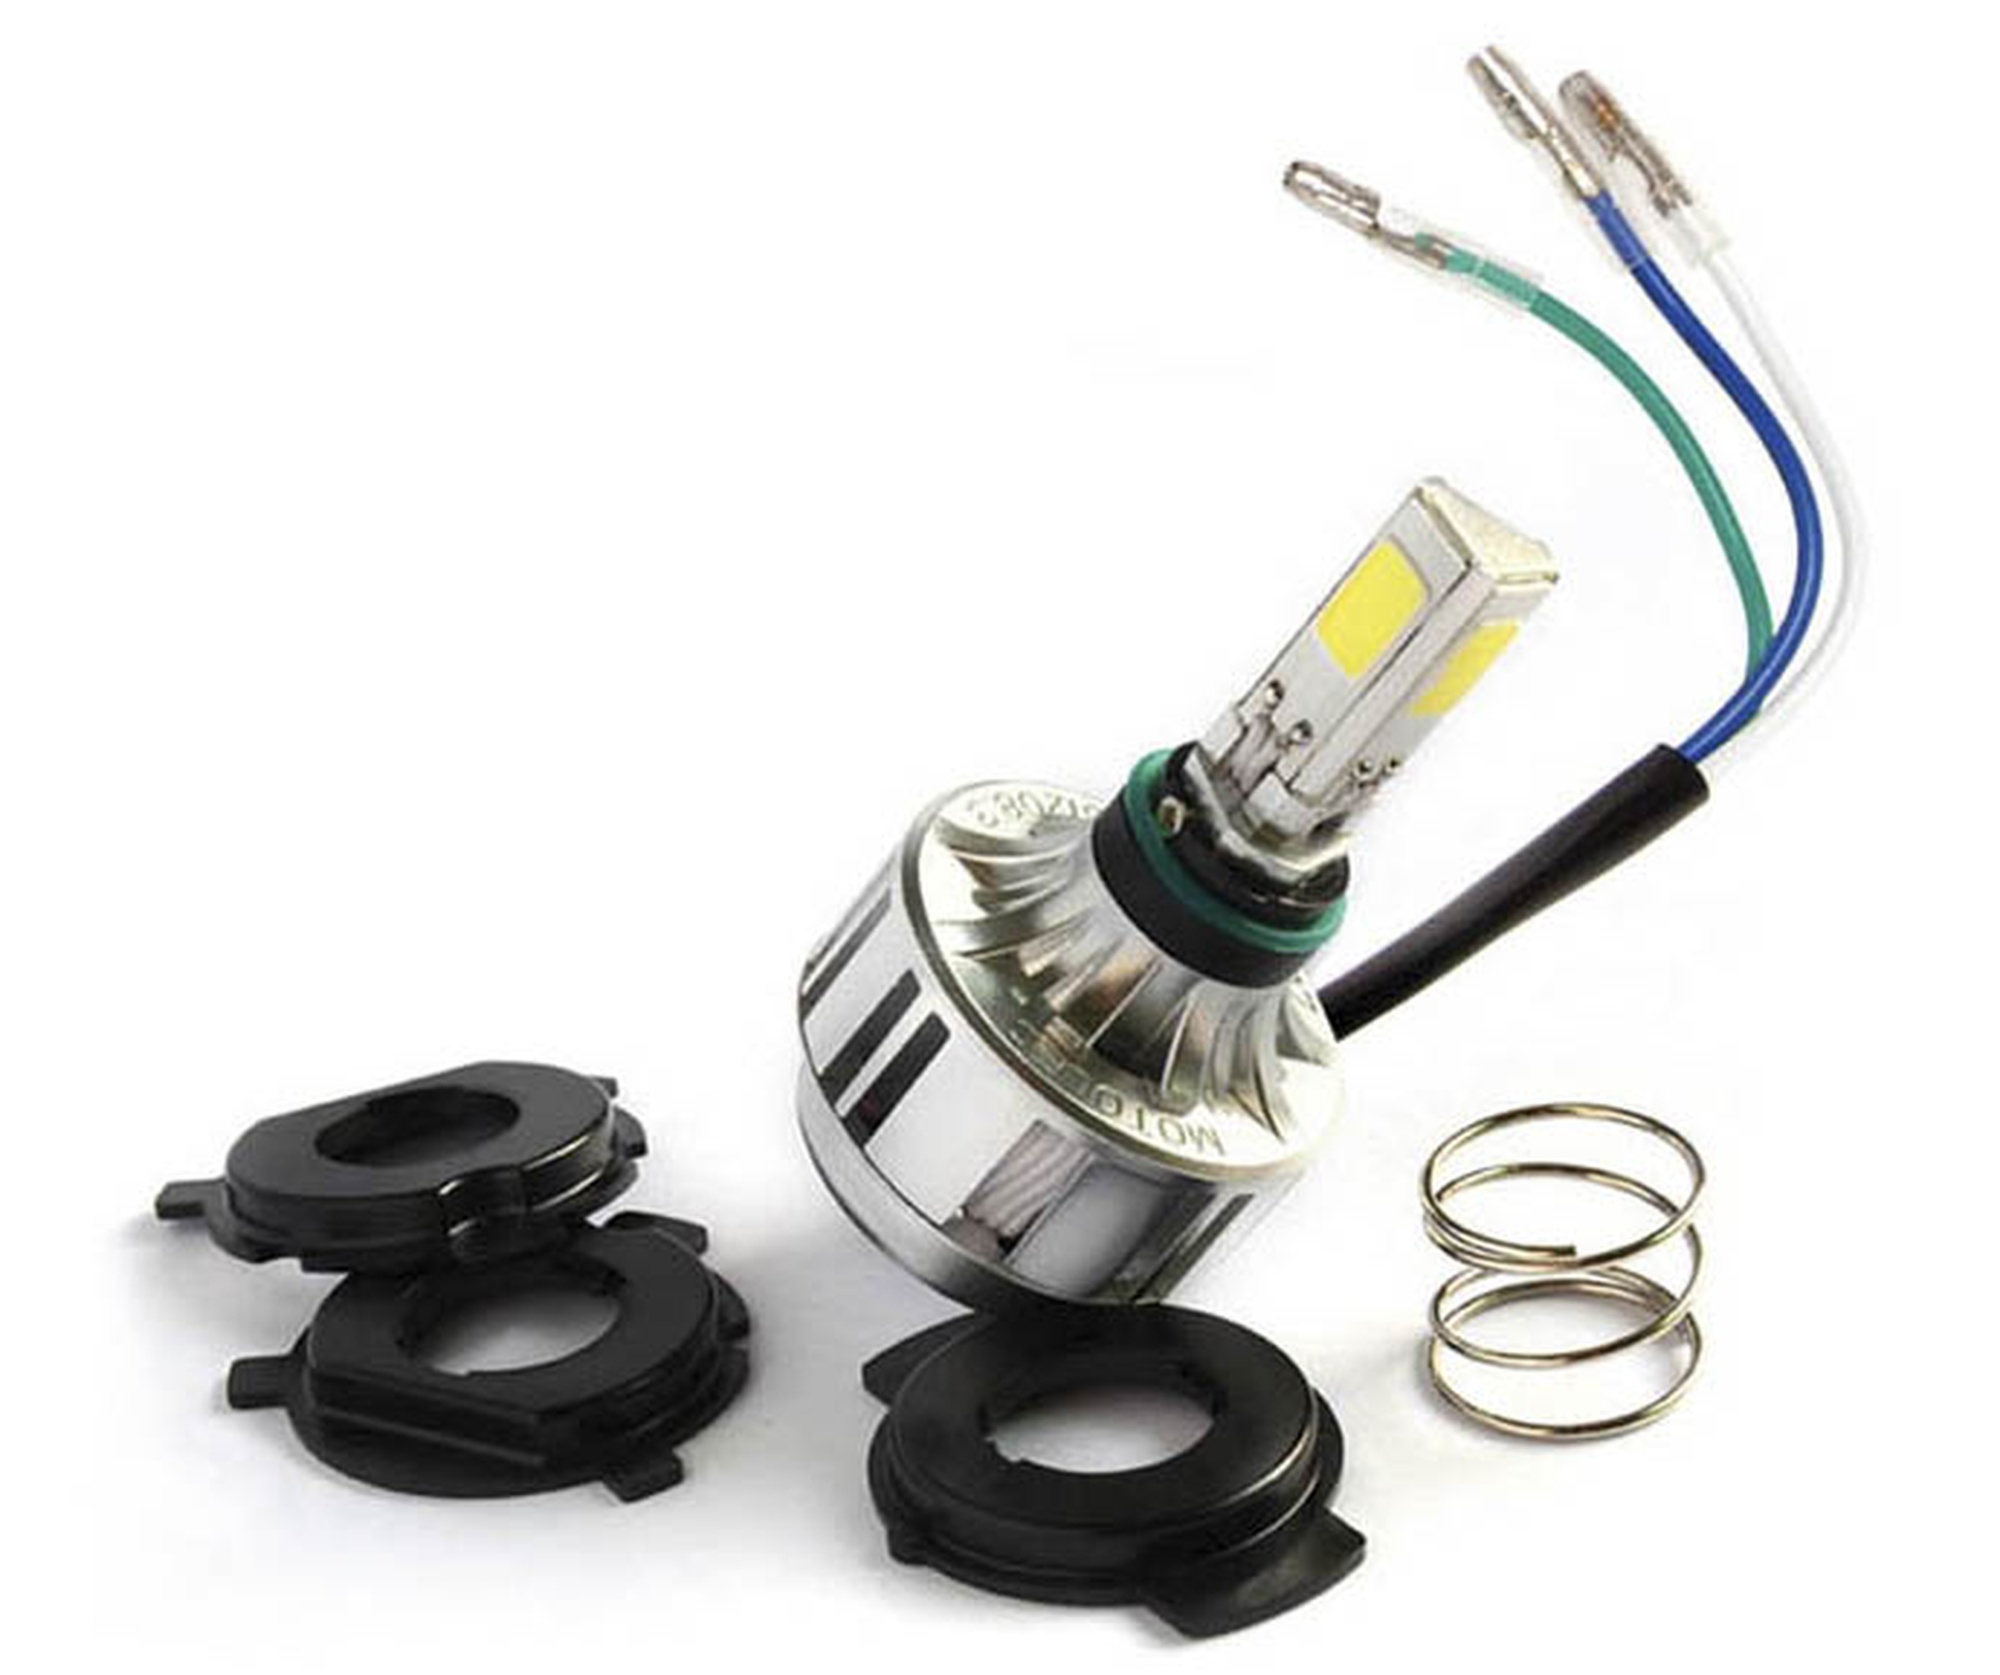 Obrázek produktu Enduro LED kit (pro žárovky H1, H2, H3, H4, H7, + KTM + Sherco), RTECH